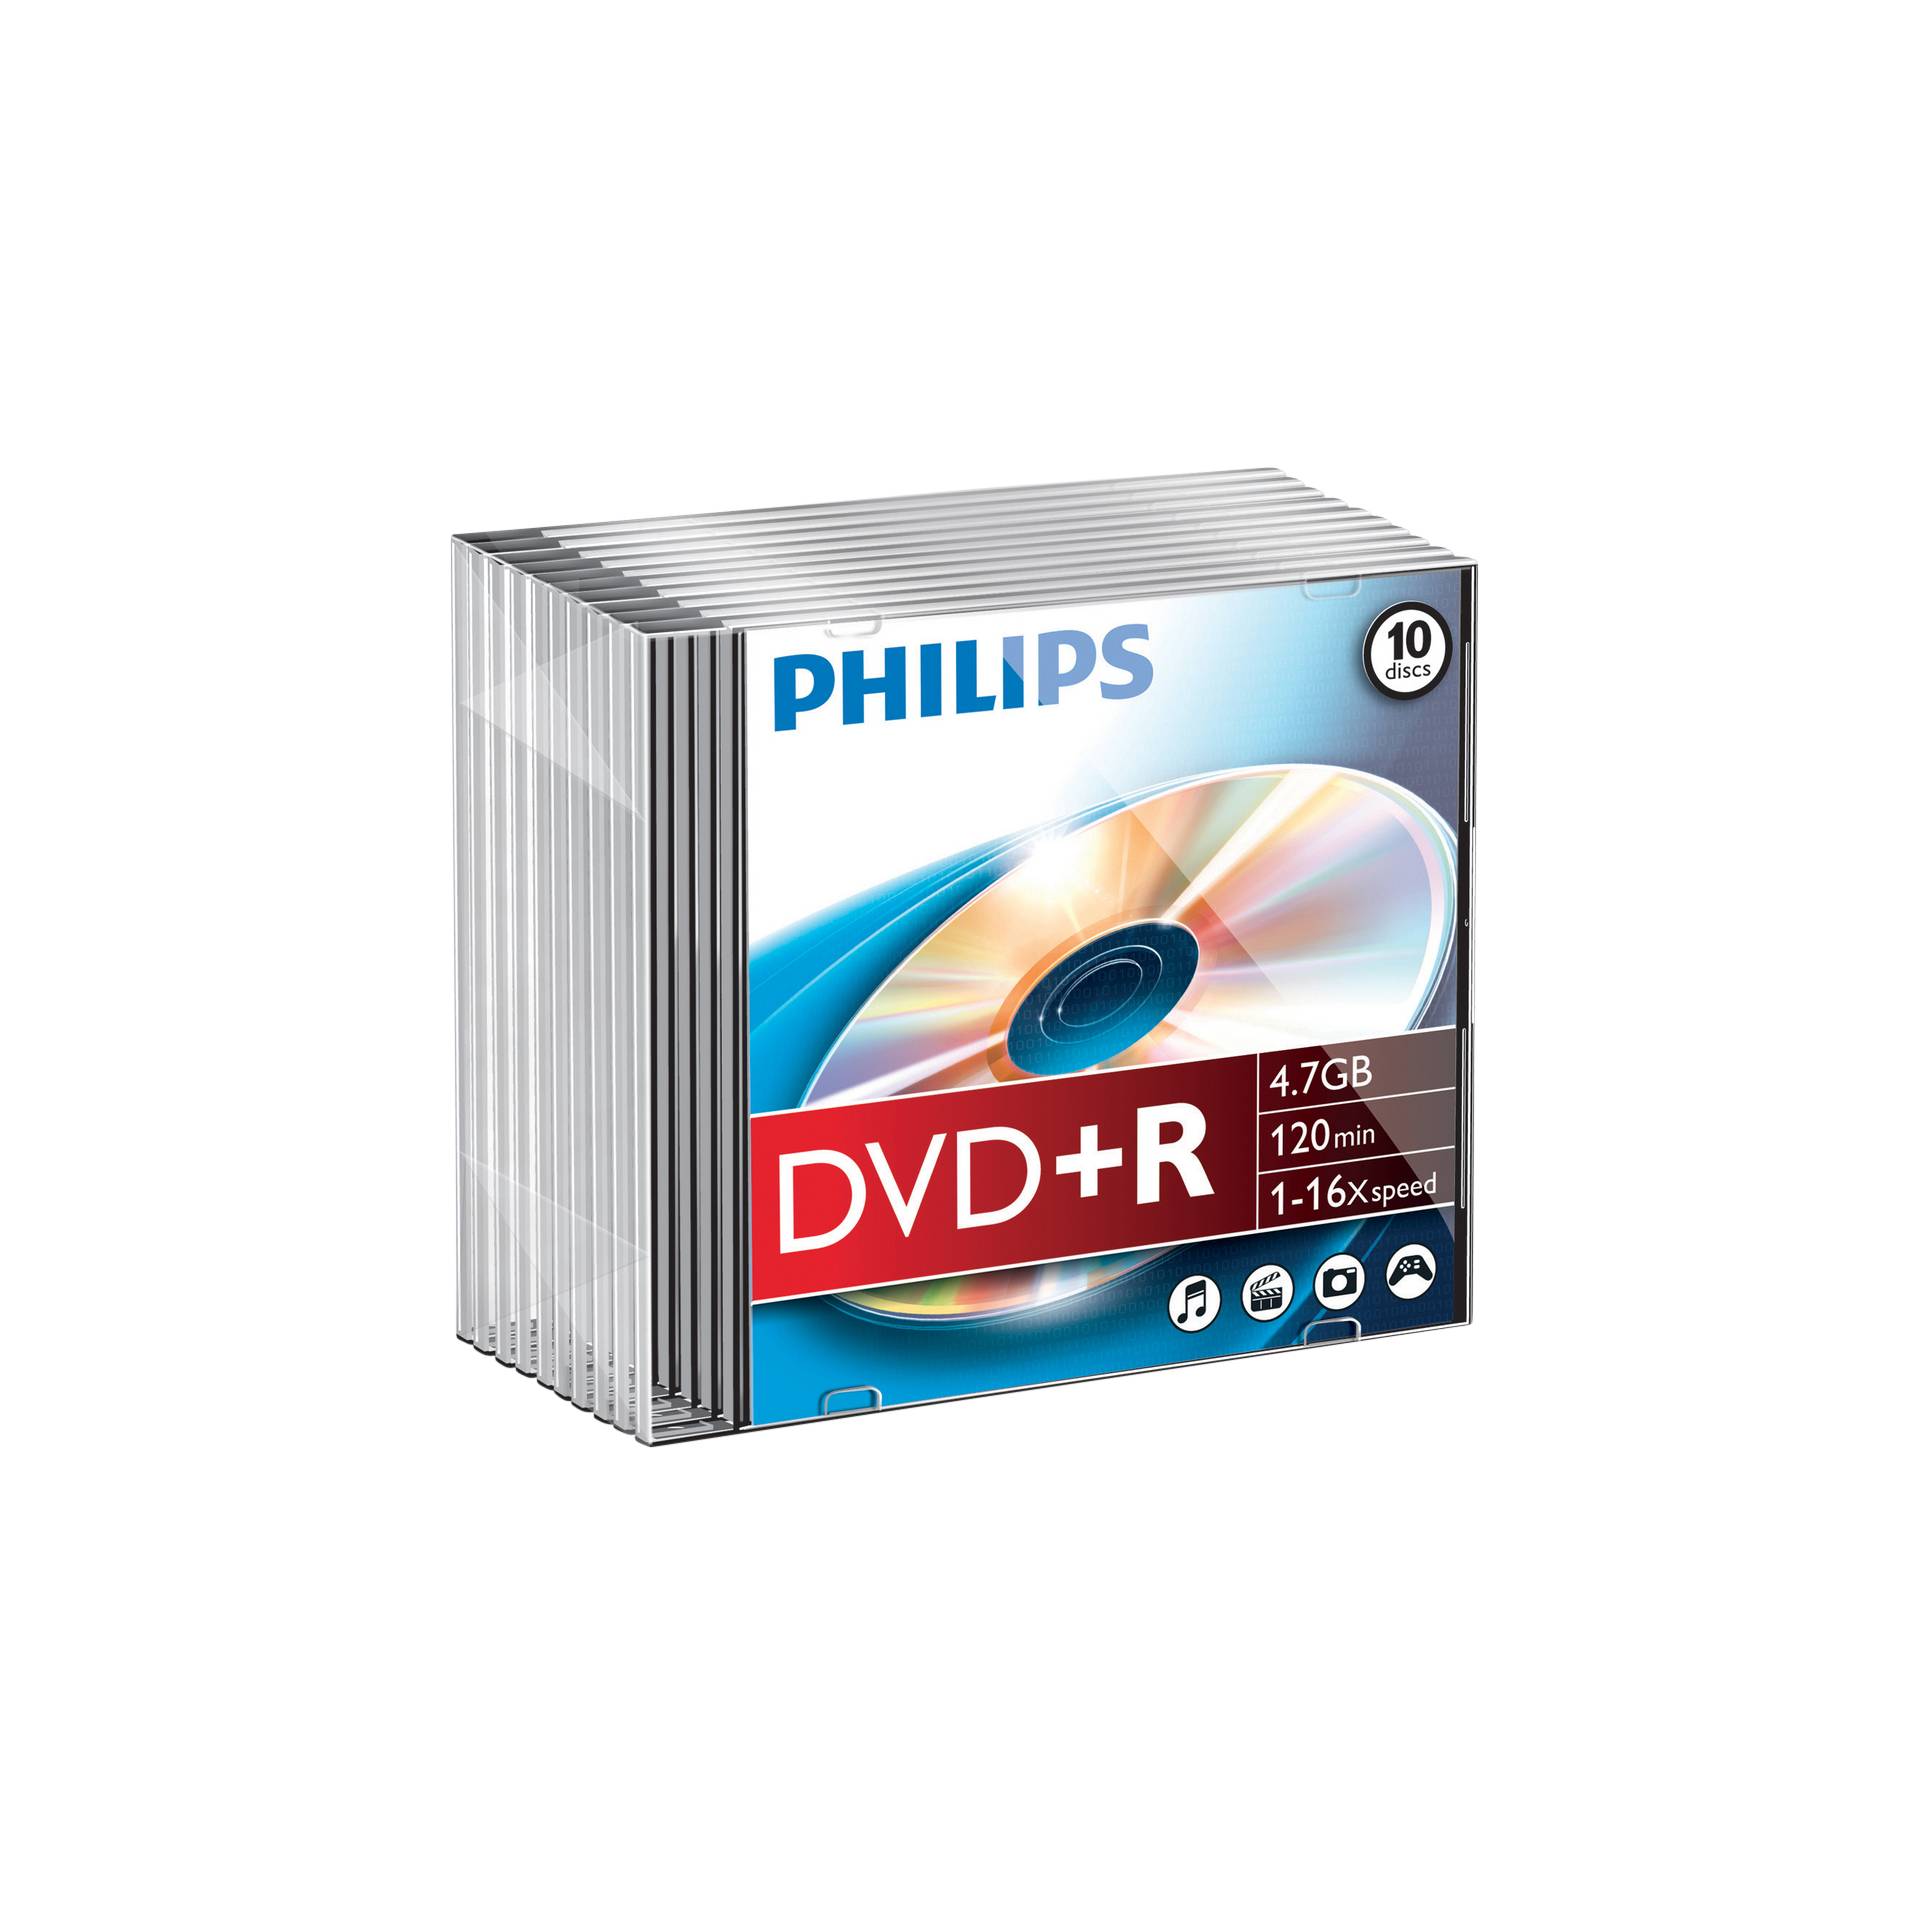 1x10 Philips DVD+R 4,7GB 16x SL